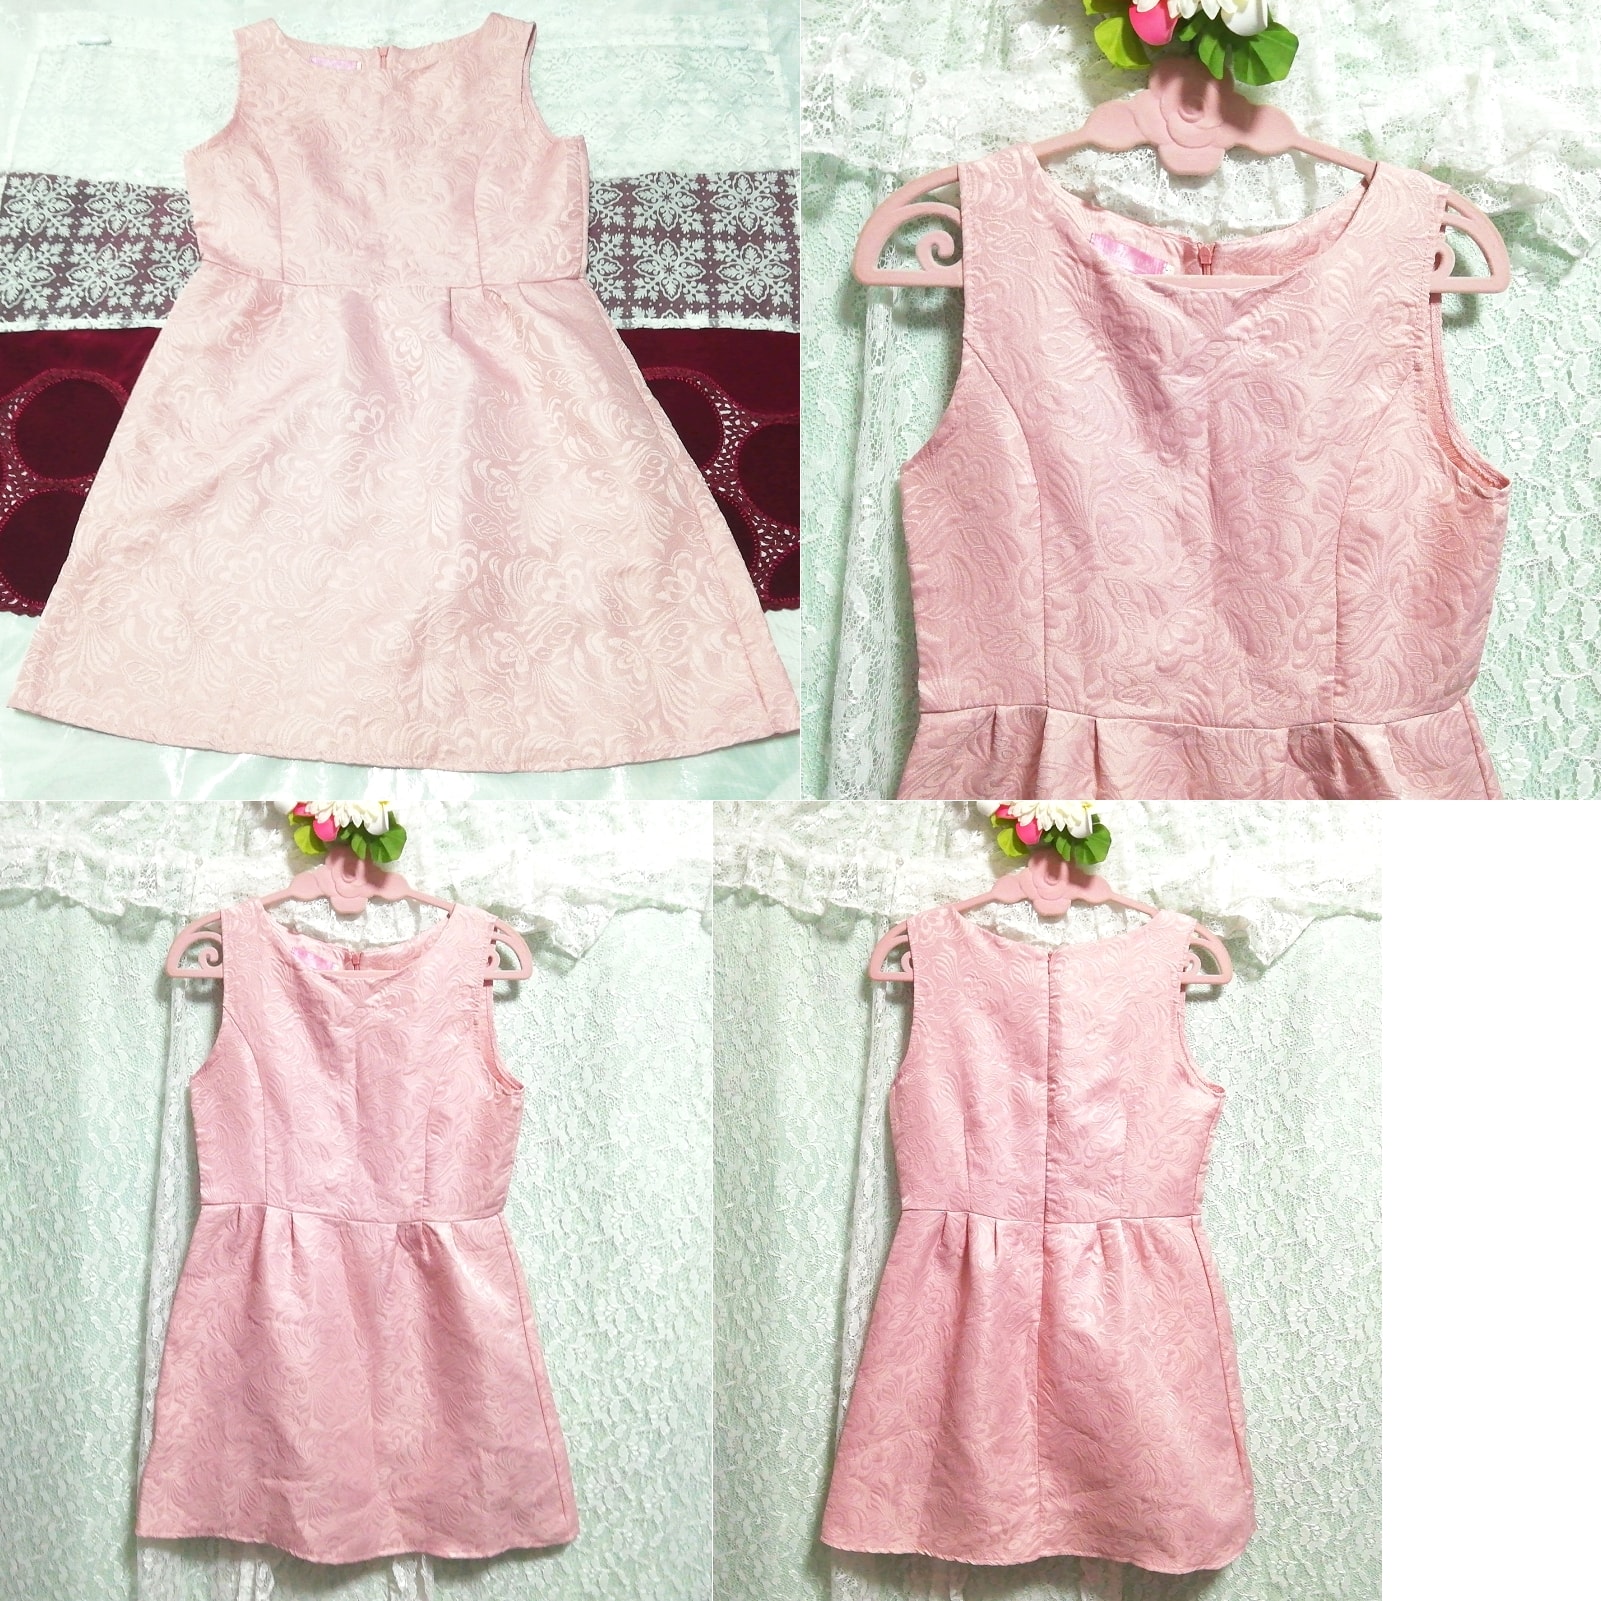 ピンクノースリーブミニスカートネグリジェワンピース Pink sleeveless mini skirt negligee dress, チュニック, 袖なし、ノースリーブ, Mサイズ